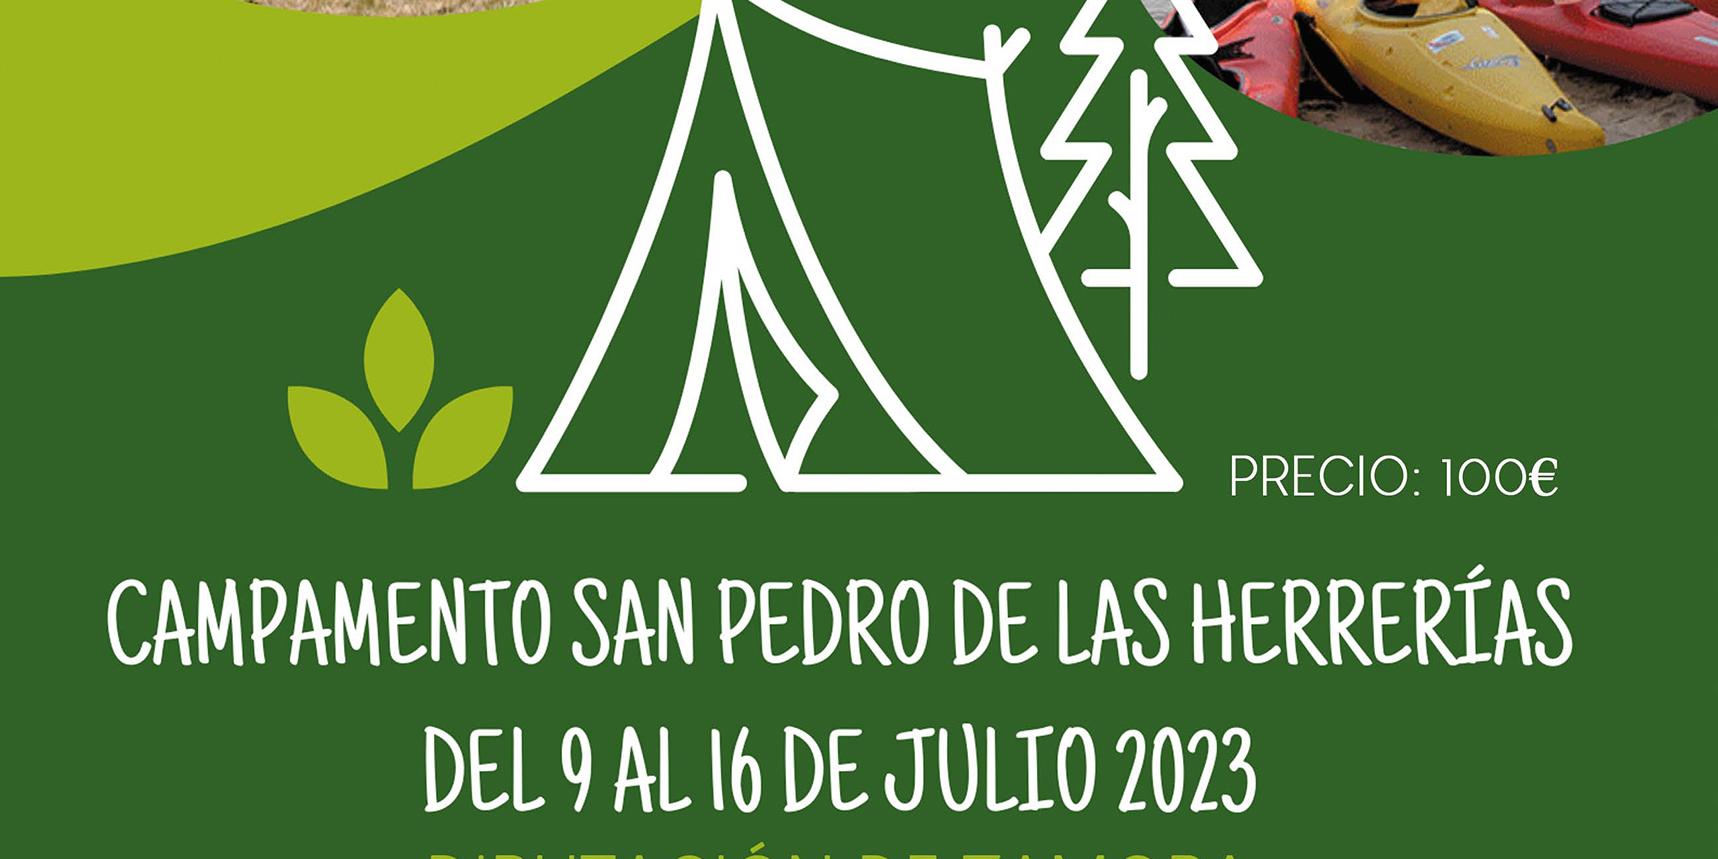 La Diputación ofrece 70 plazas para el campamento San Pedro de las Herrerías